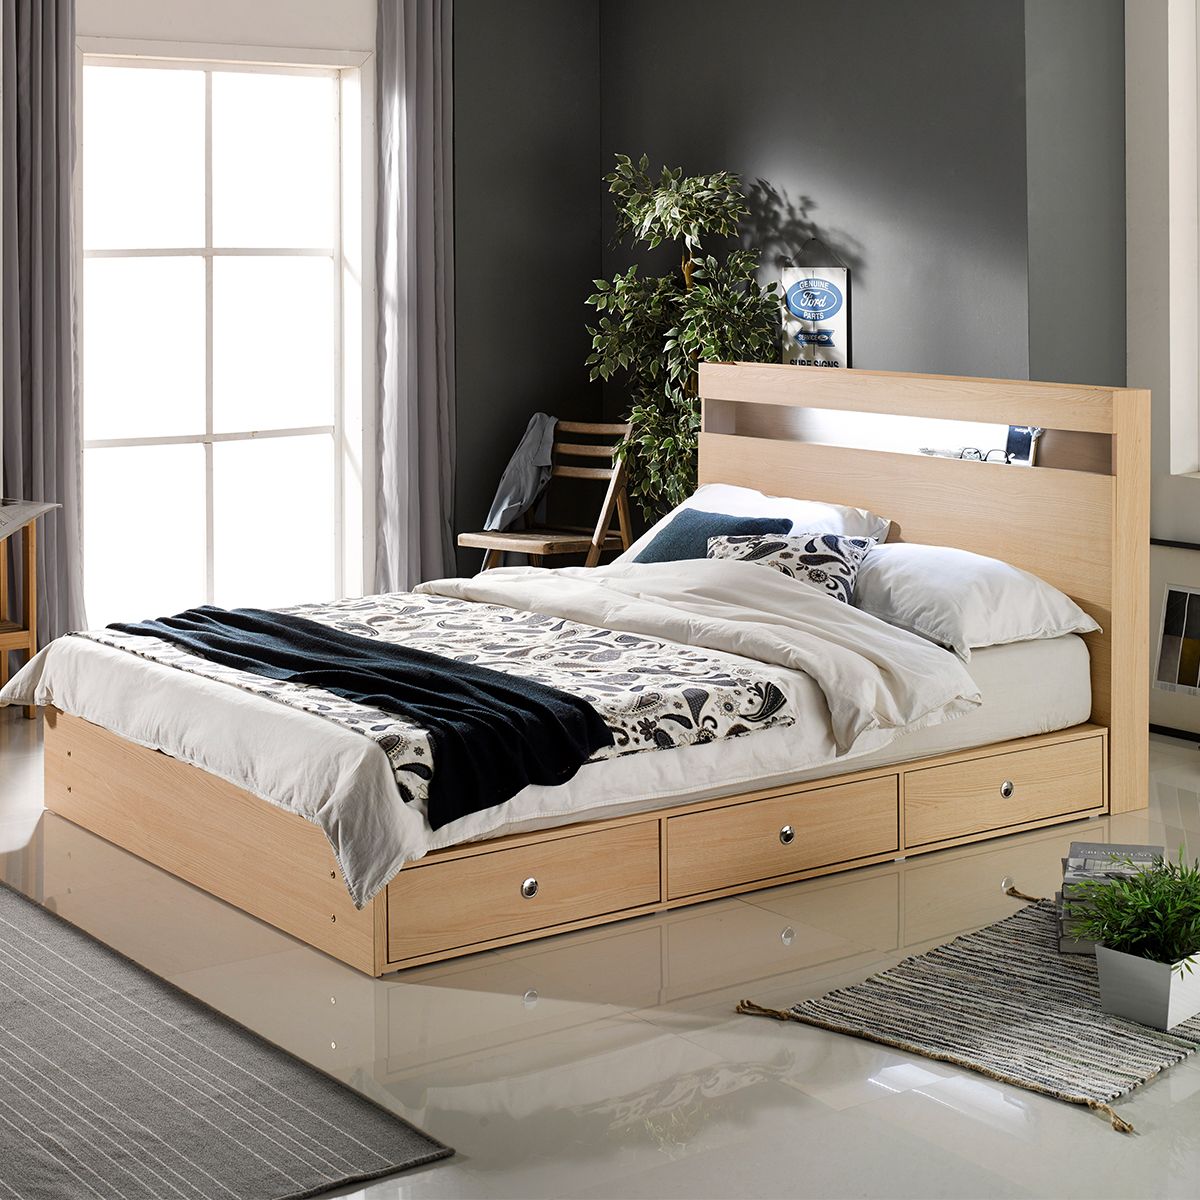 Giường đơn là gì? 50 mẫu giường đơn giá tốt nhất 2020 – Dongsuh Furniture